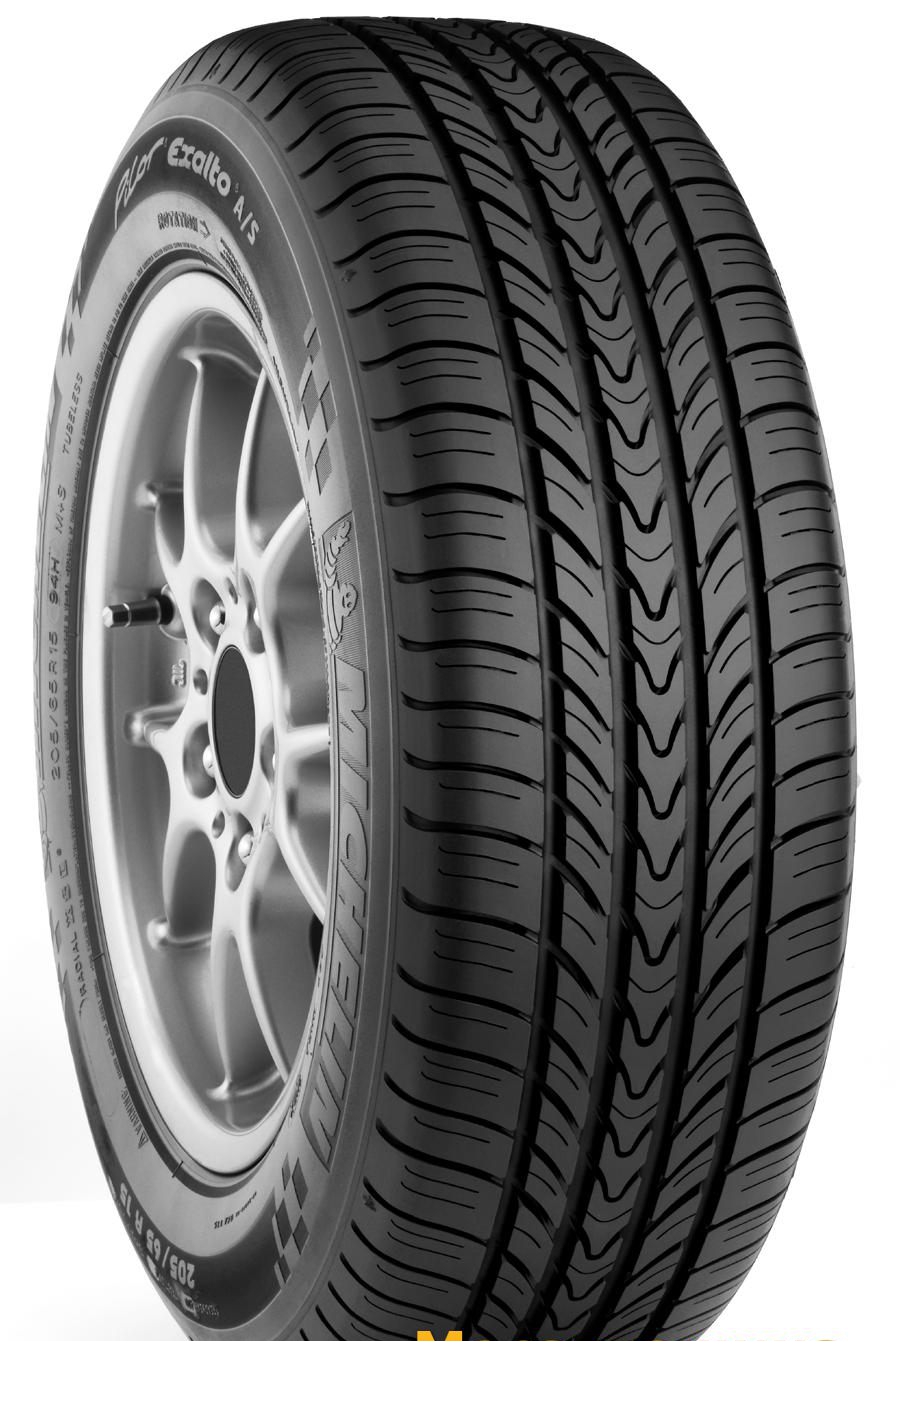 Tire Michelin Pilot Exalto A/S 215/60R16 94H - picture, photo, image